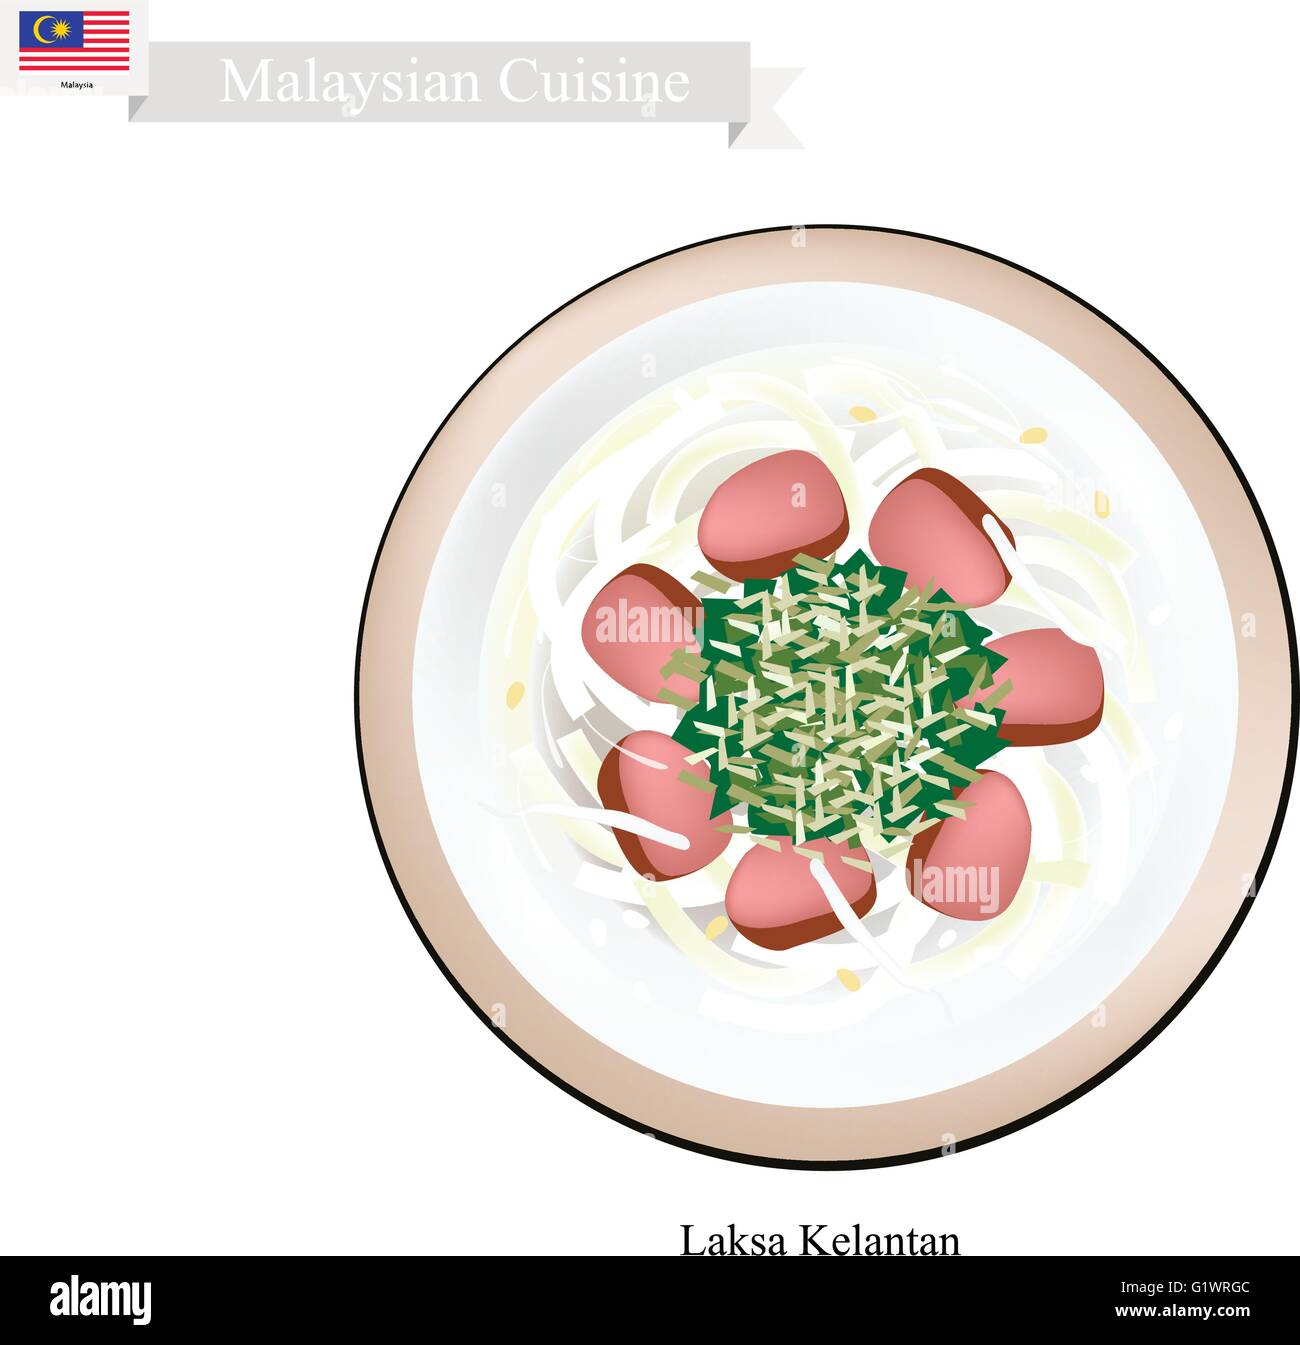 La cuisine malaisienne, Kelantan Laksa ou nouilles de riz traditionnel servi dans une sauce de noix de coco crémeuse et le maquereau Poisson. L'un des plus P Illustration de Vecteur